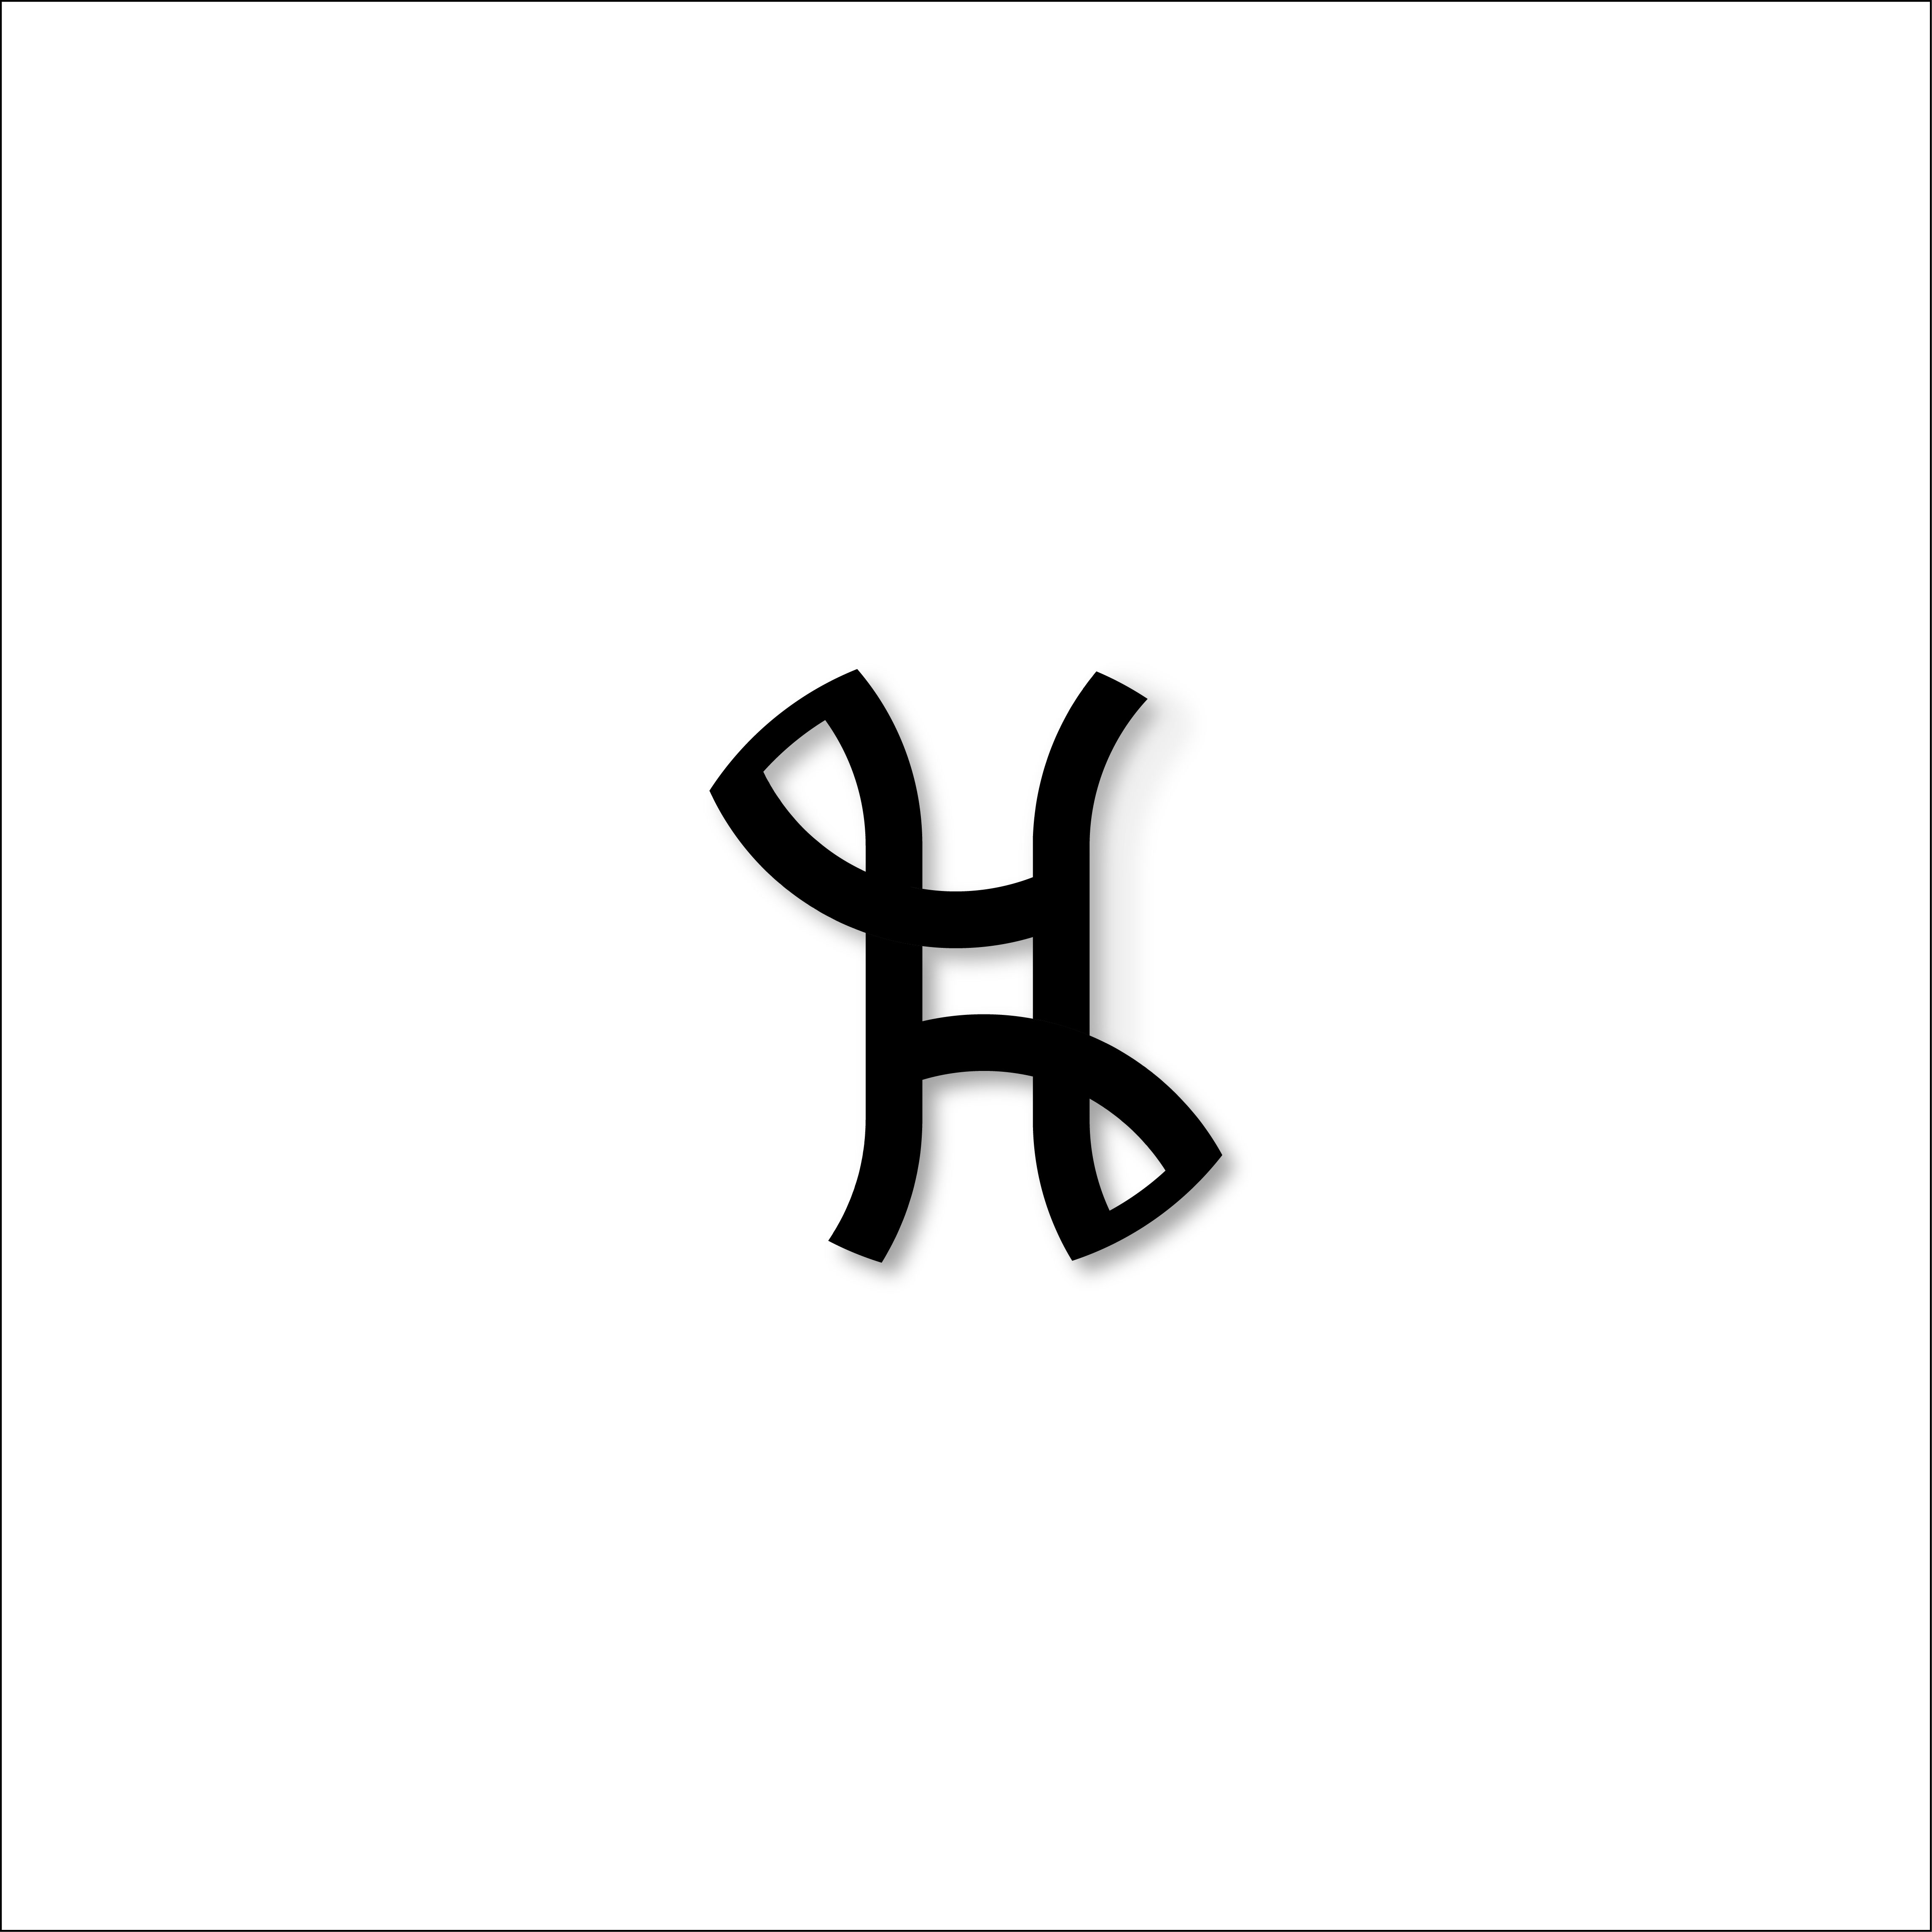 H letter logo design cover image.